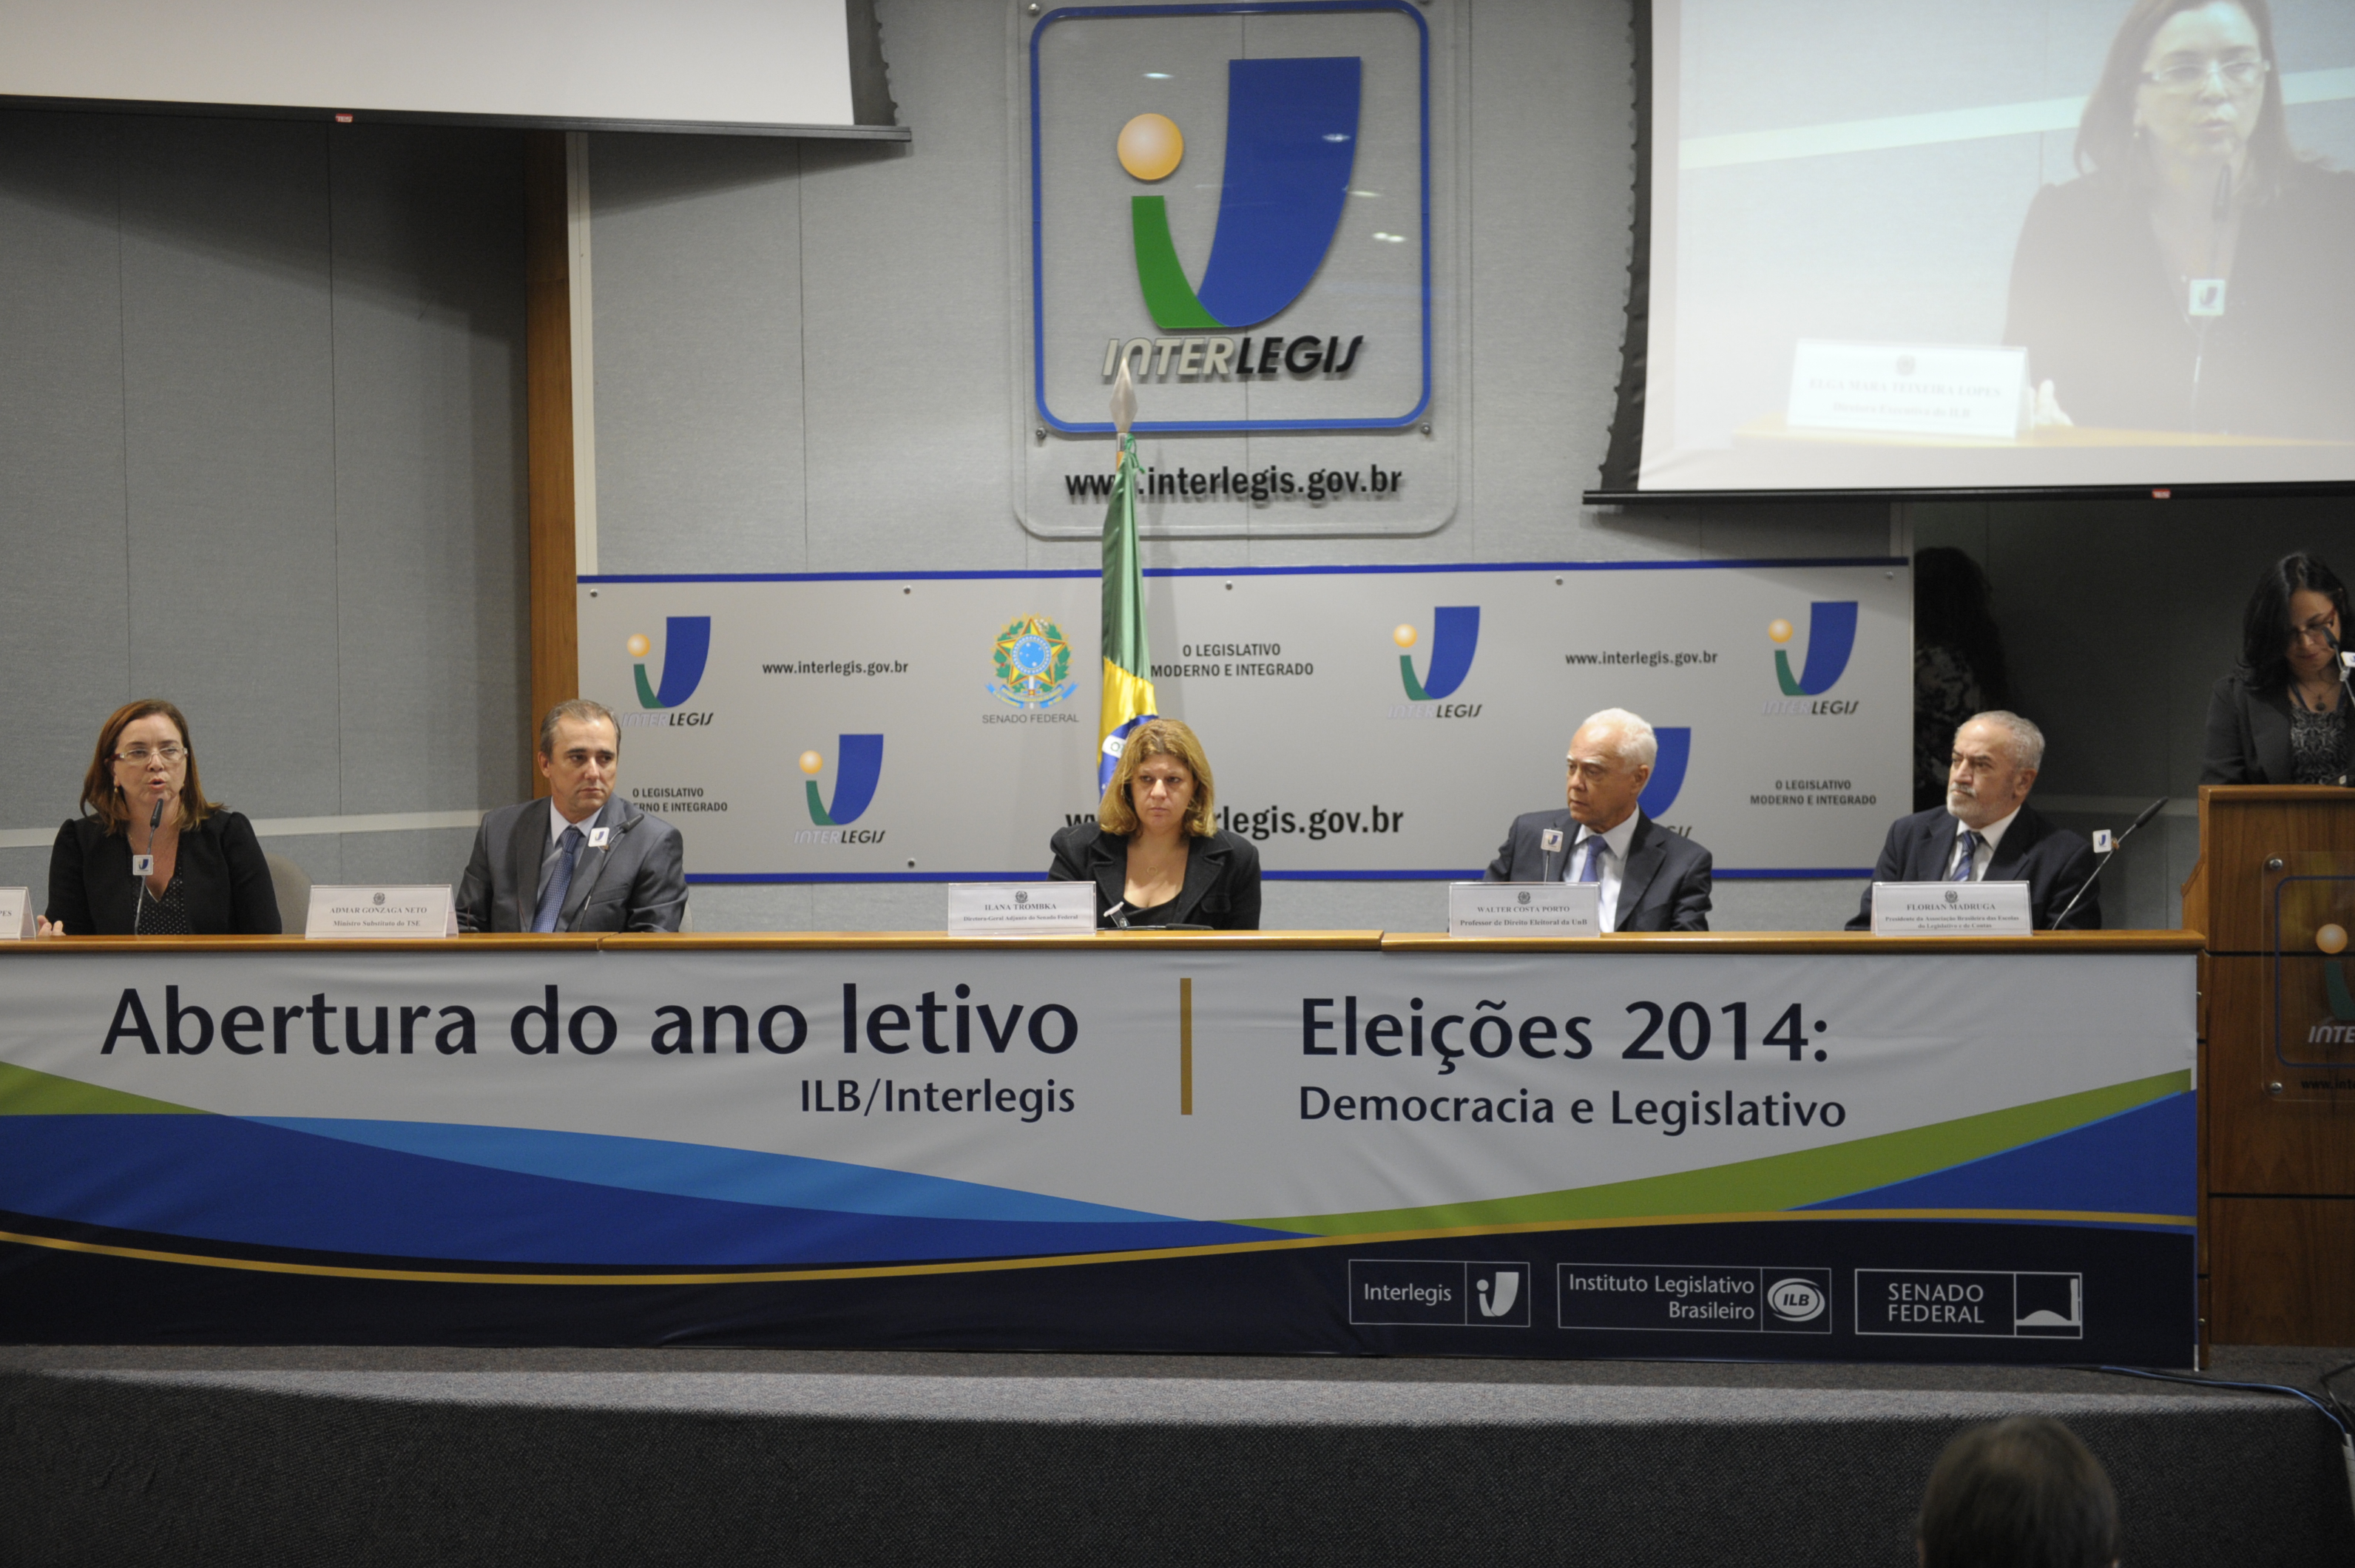 Aula inaugural 2014 do ILB/Interlegis aborda questões de Direito Eleitoral